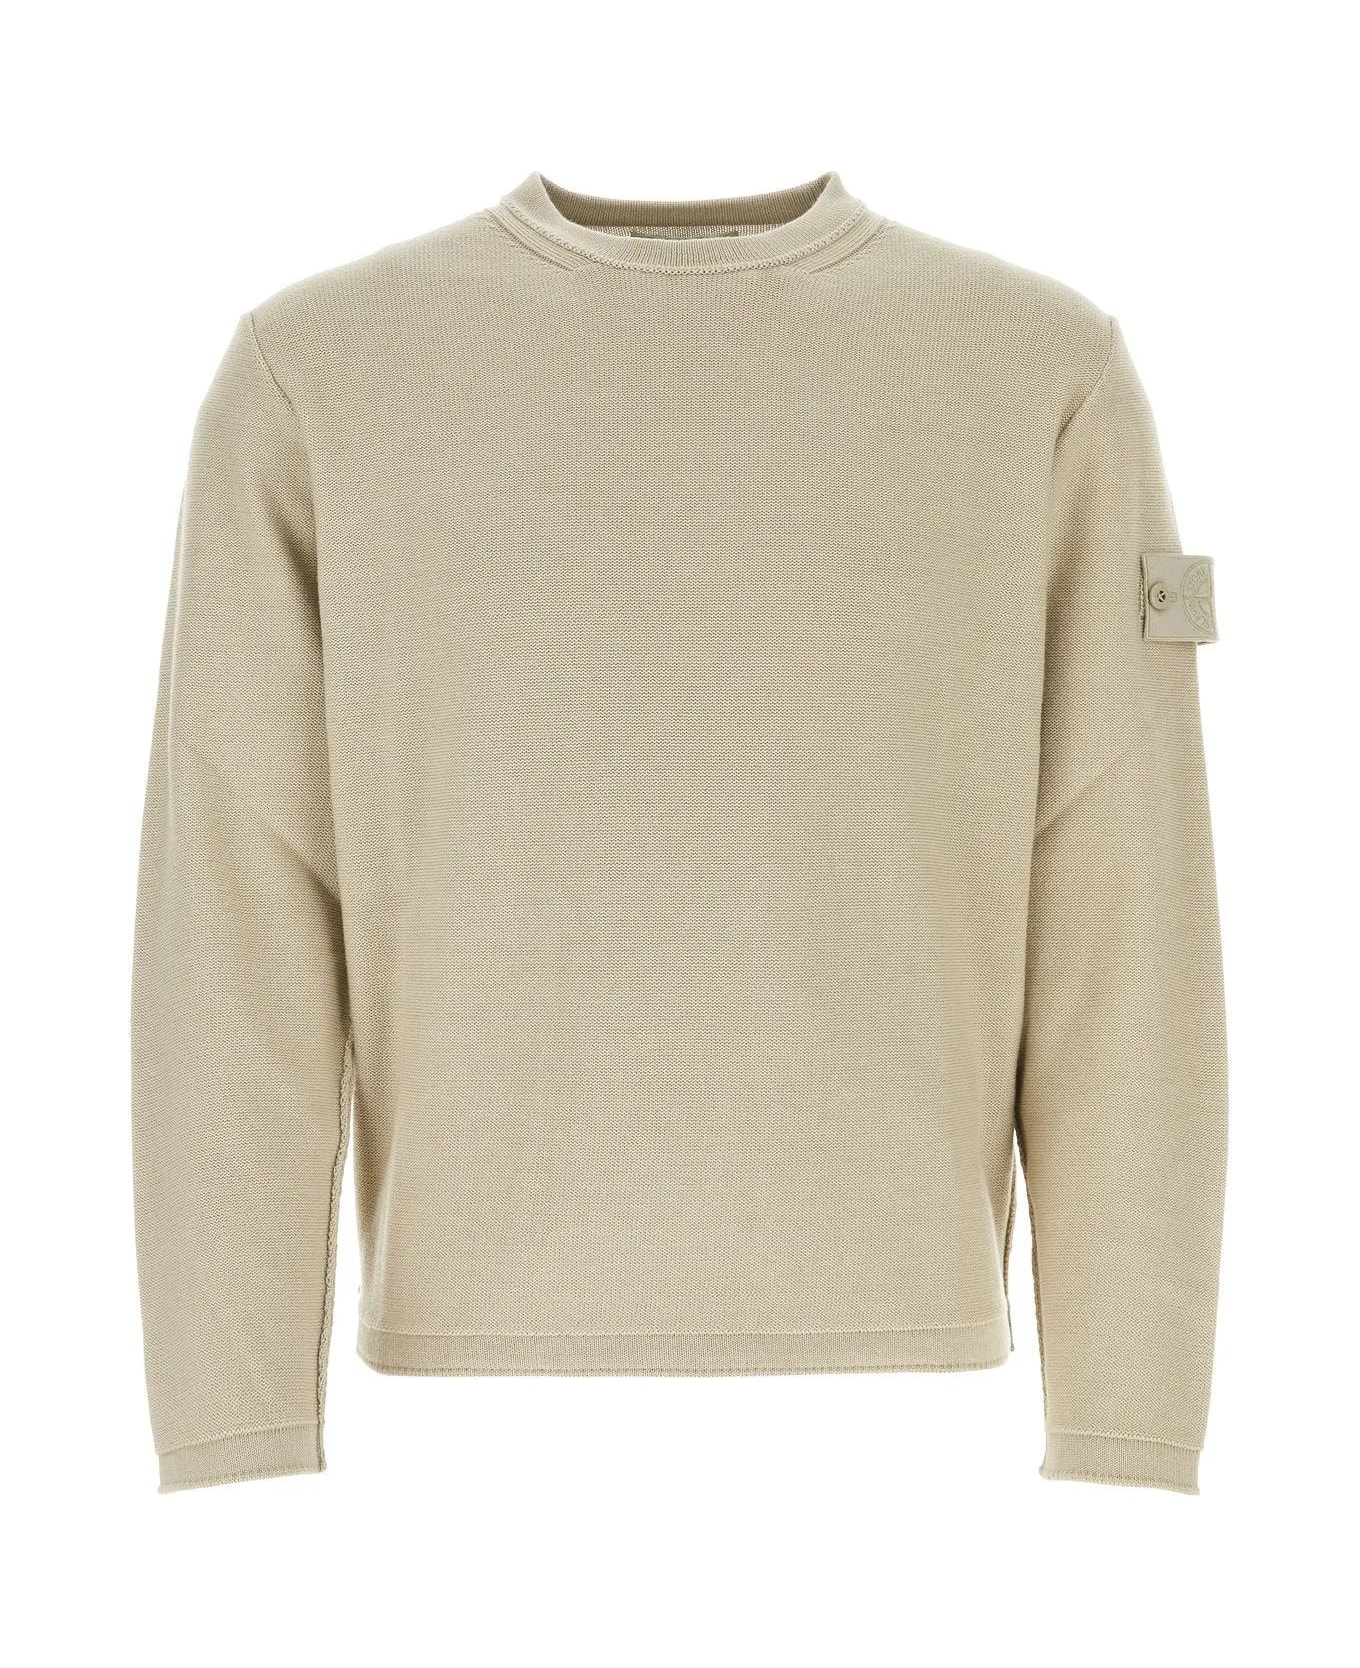 Stone Island Cotton Blend Sweater - NEUTRALS